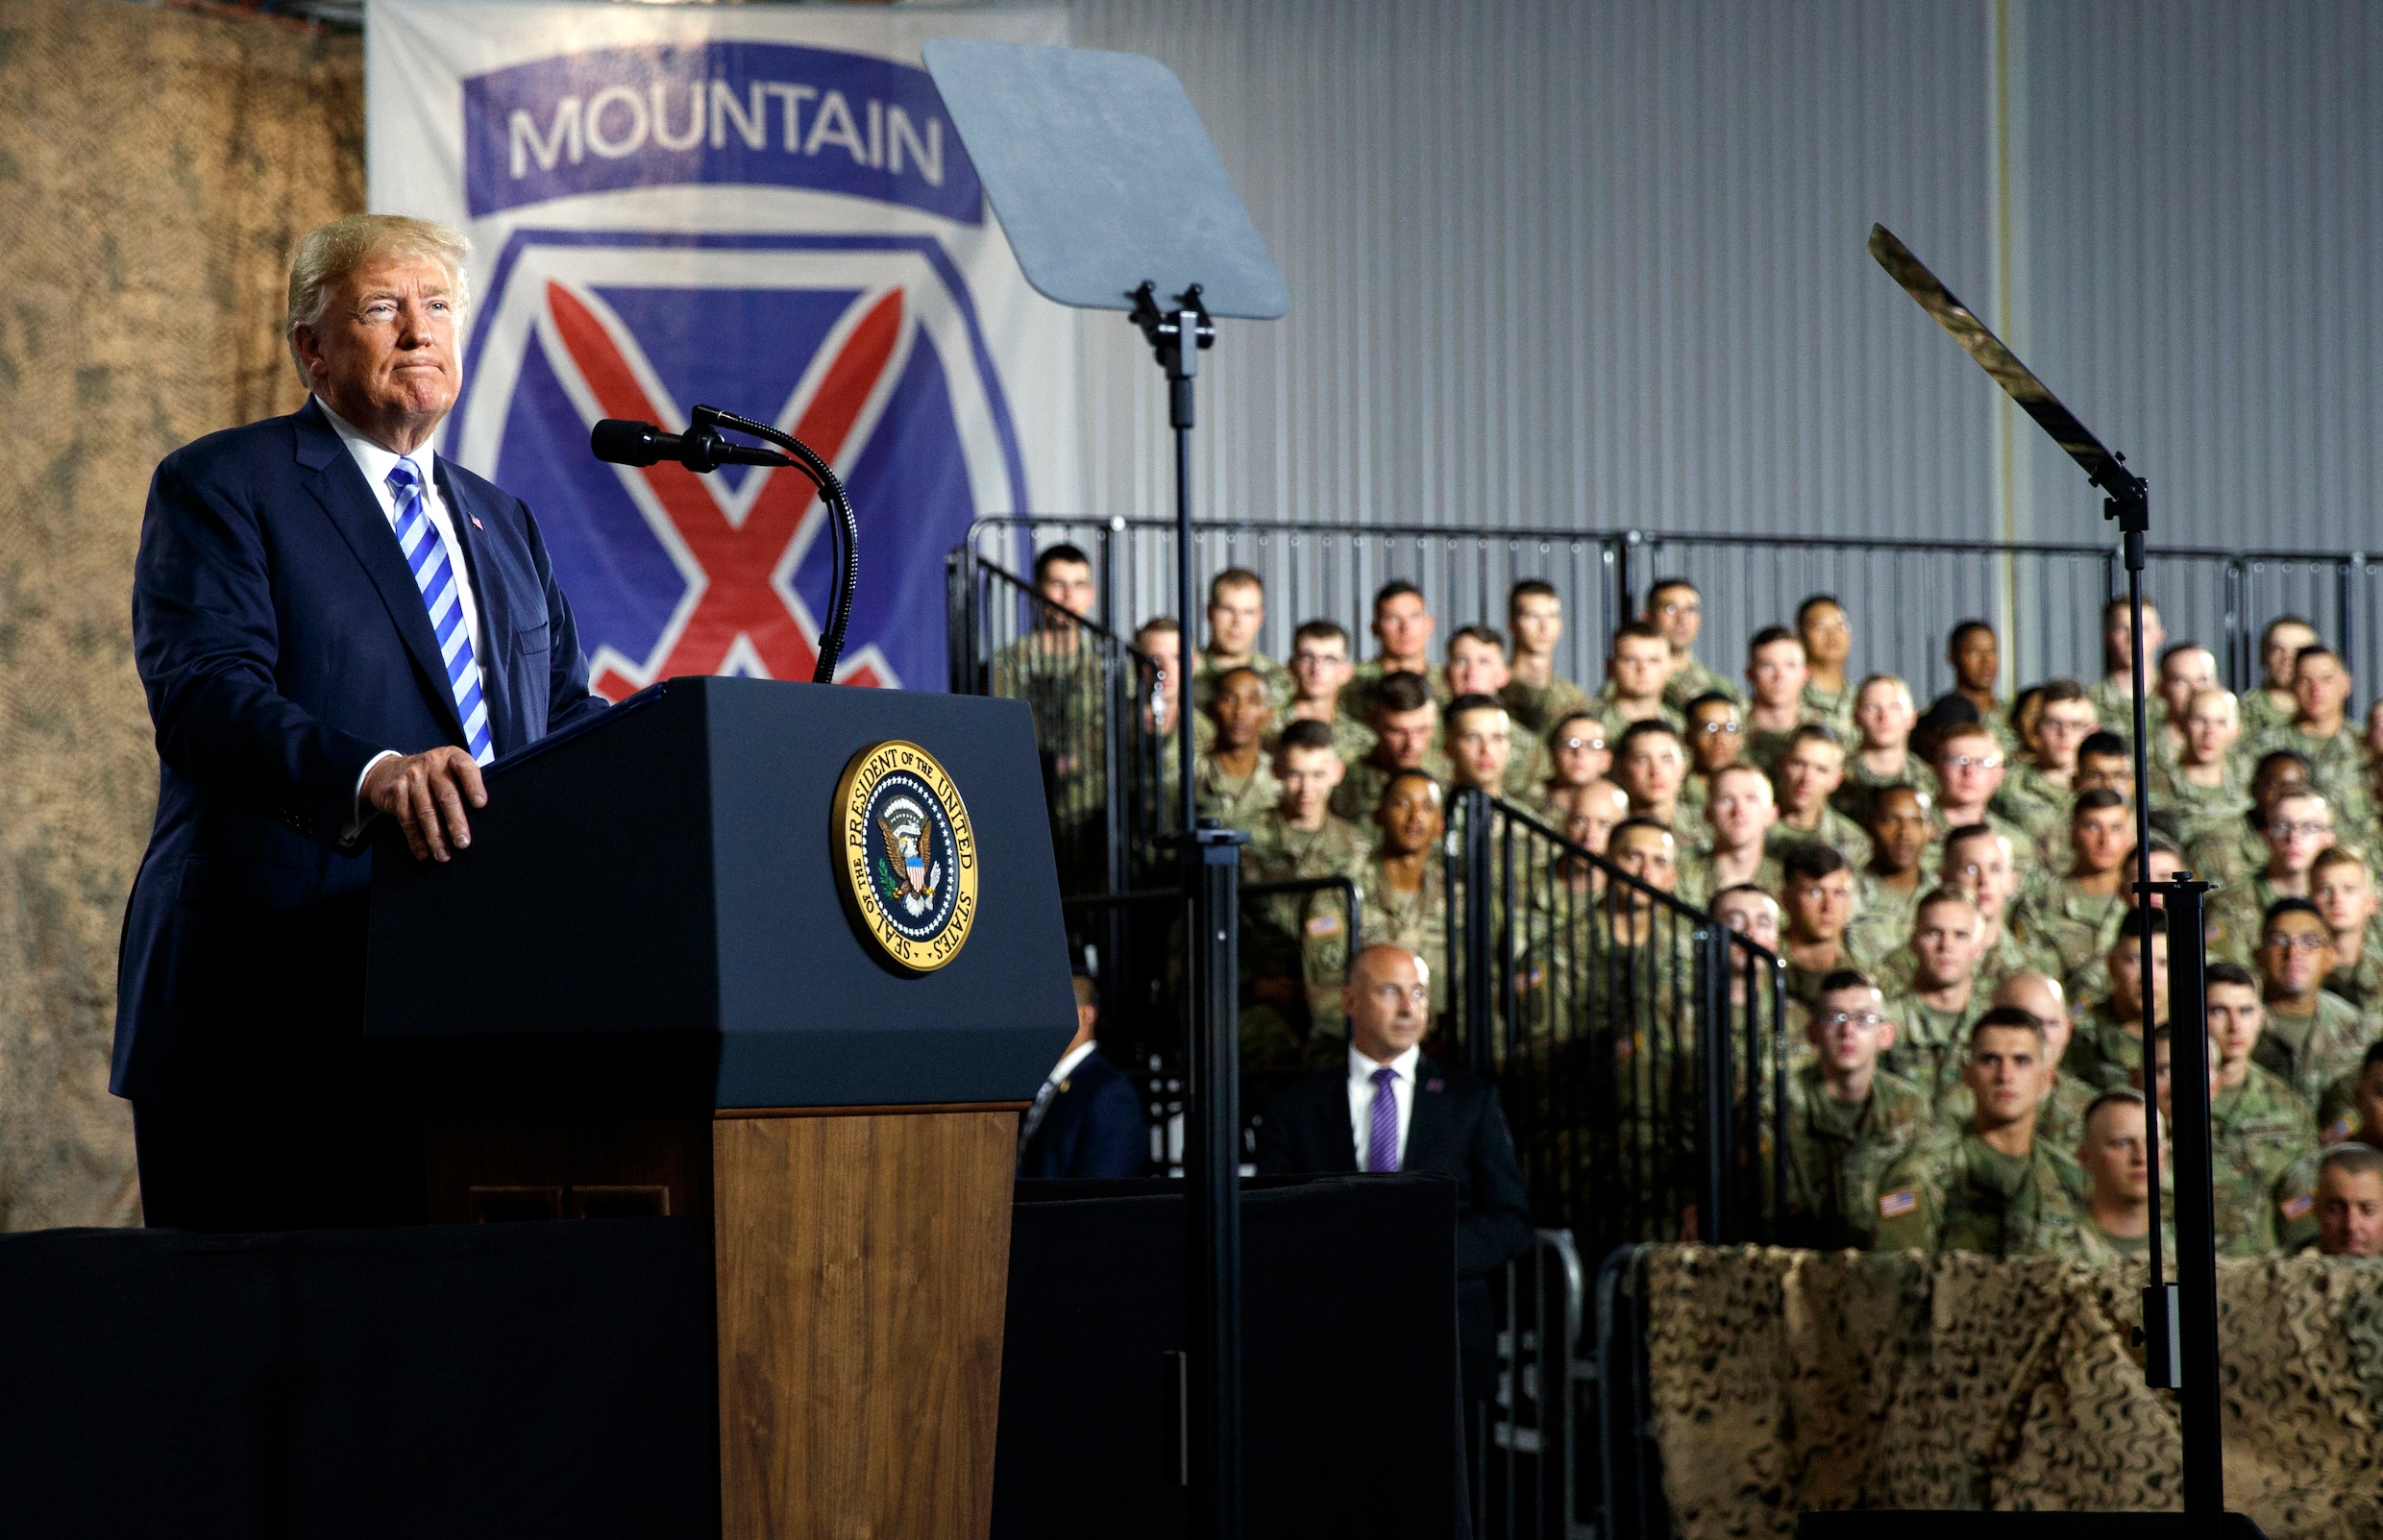 Trump keurt defensiebudget van 716 miljard dollar goed: "Meest significante investering in ons leger en onze soldaten uit de moderne geschiedenis"